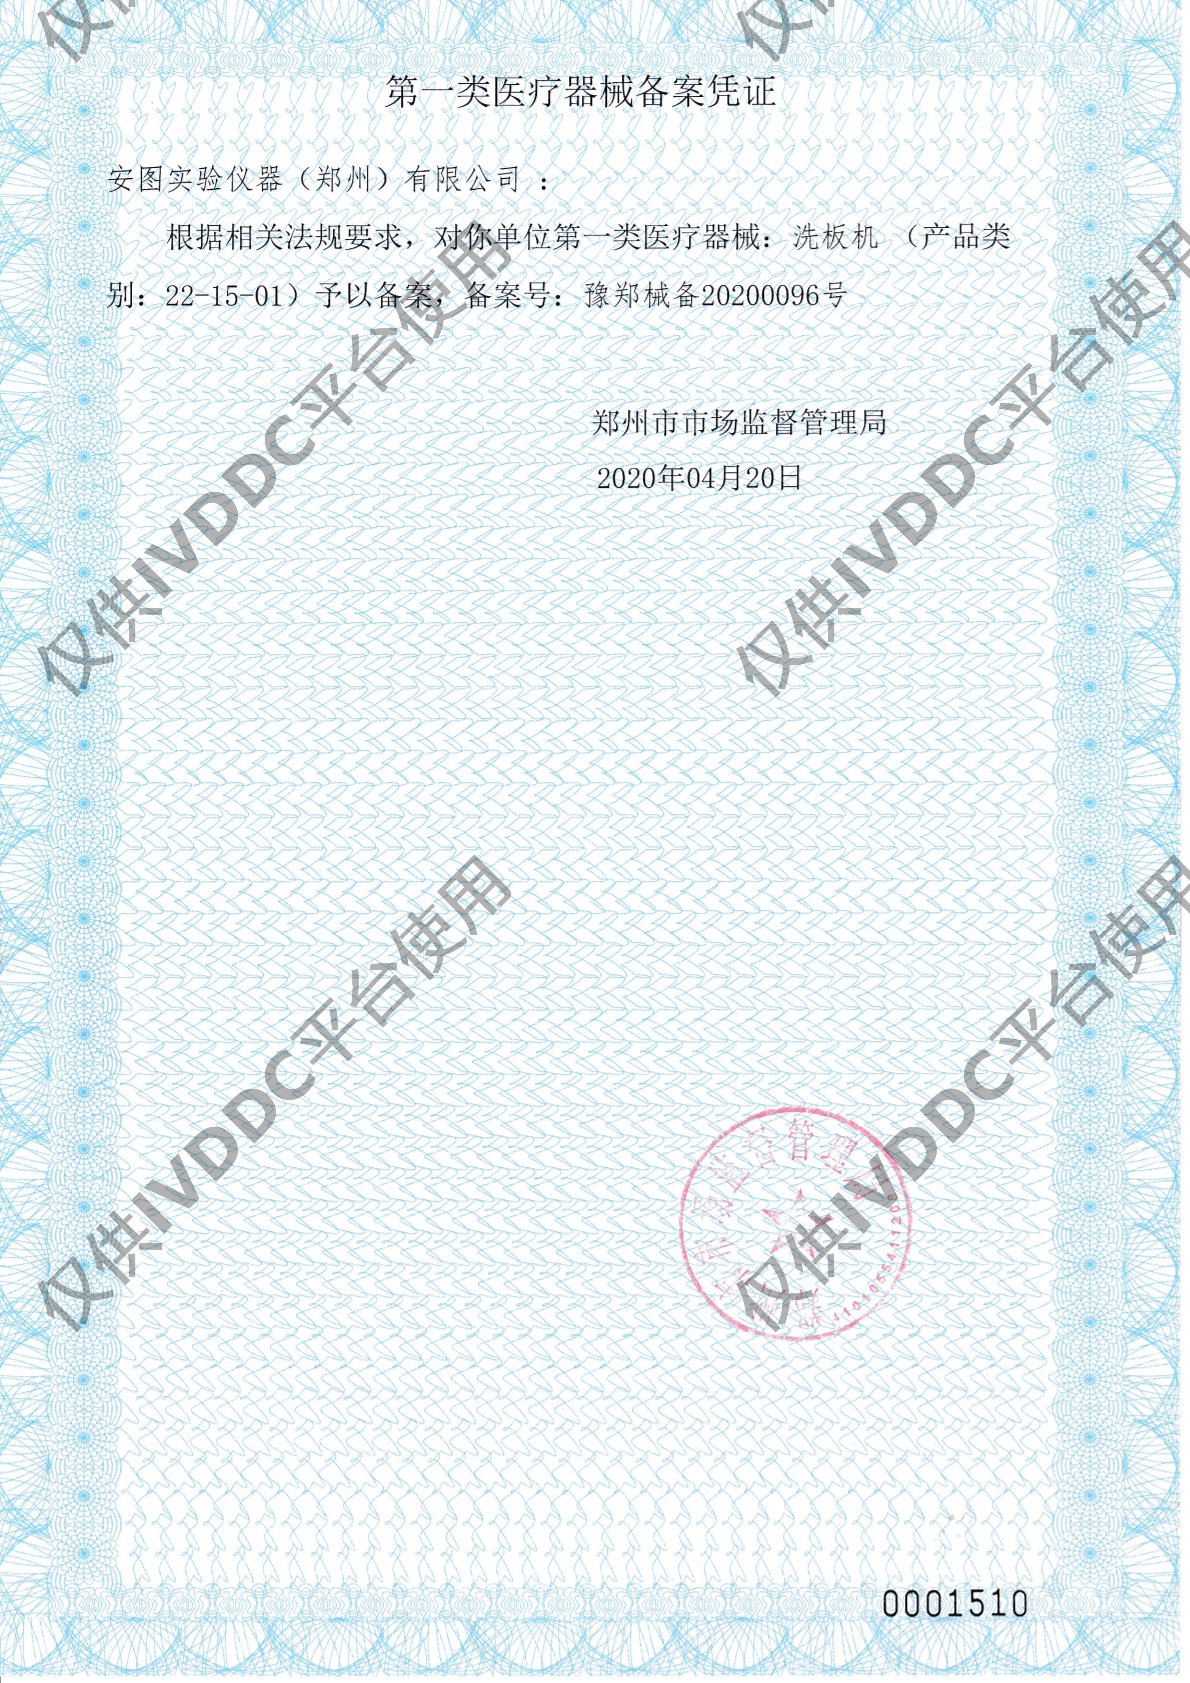 【郑州安图】 洗板机 IWO-960注册证